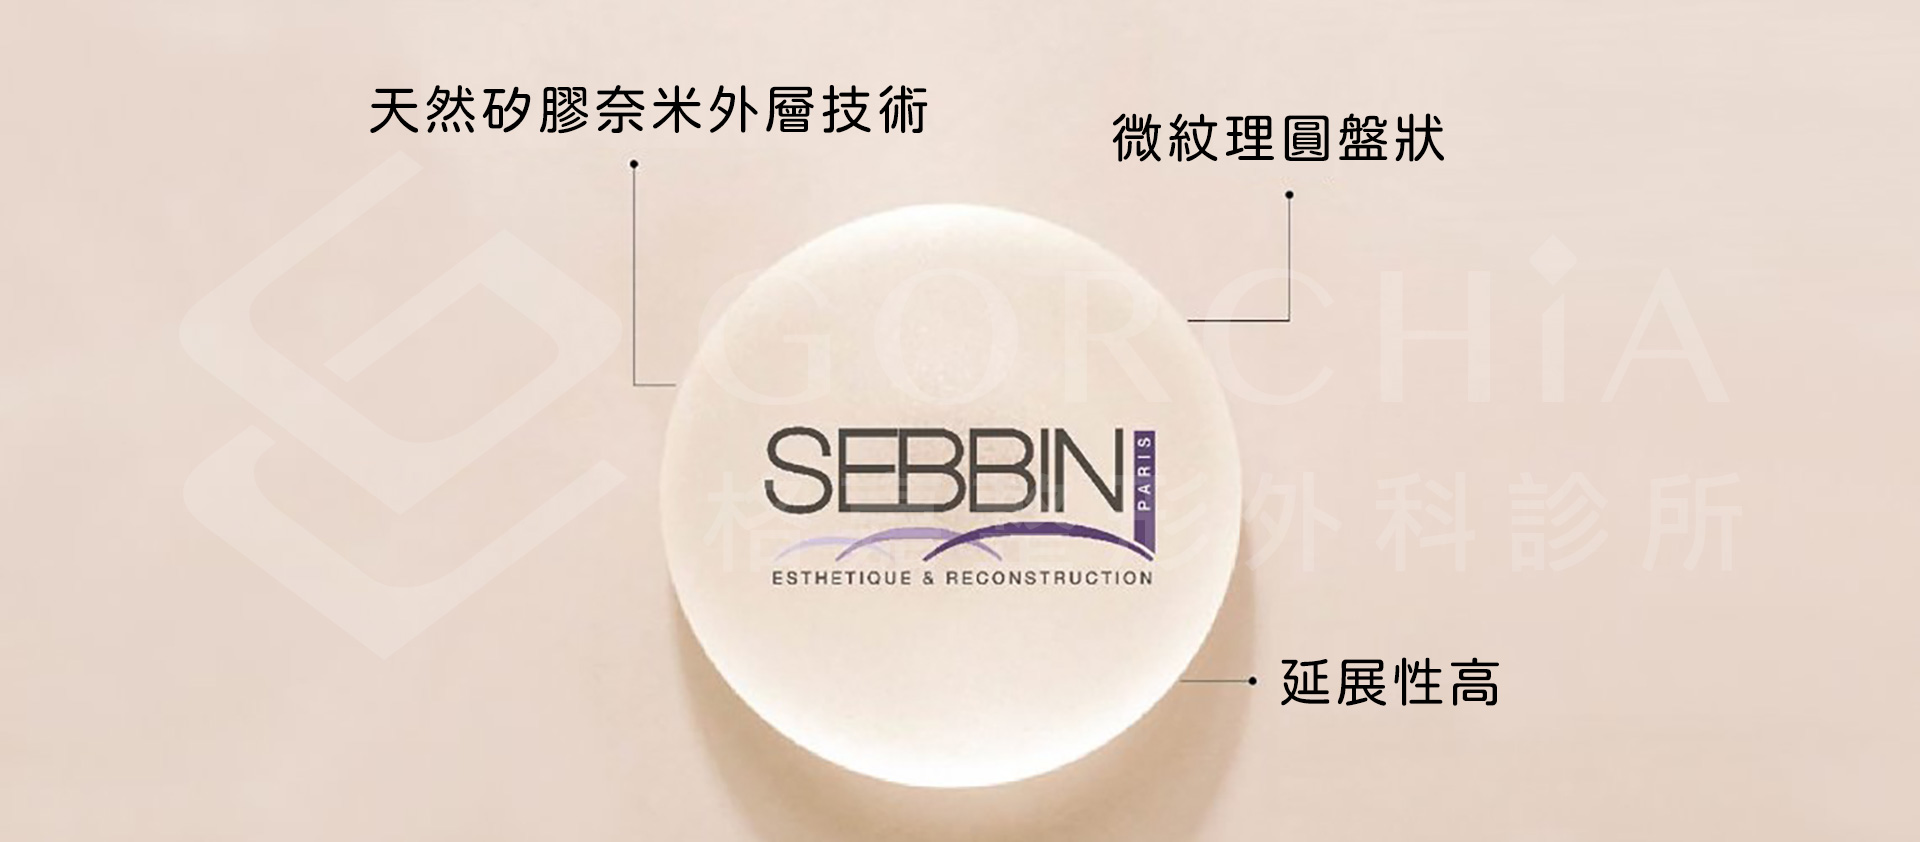 Sebbin 的乳房植體：天然矽膠奈米外層技術、微紋理圓盤狀、延展性高